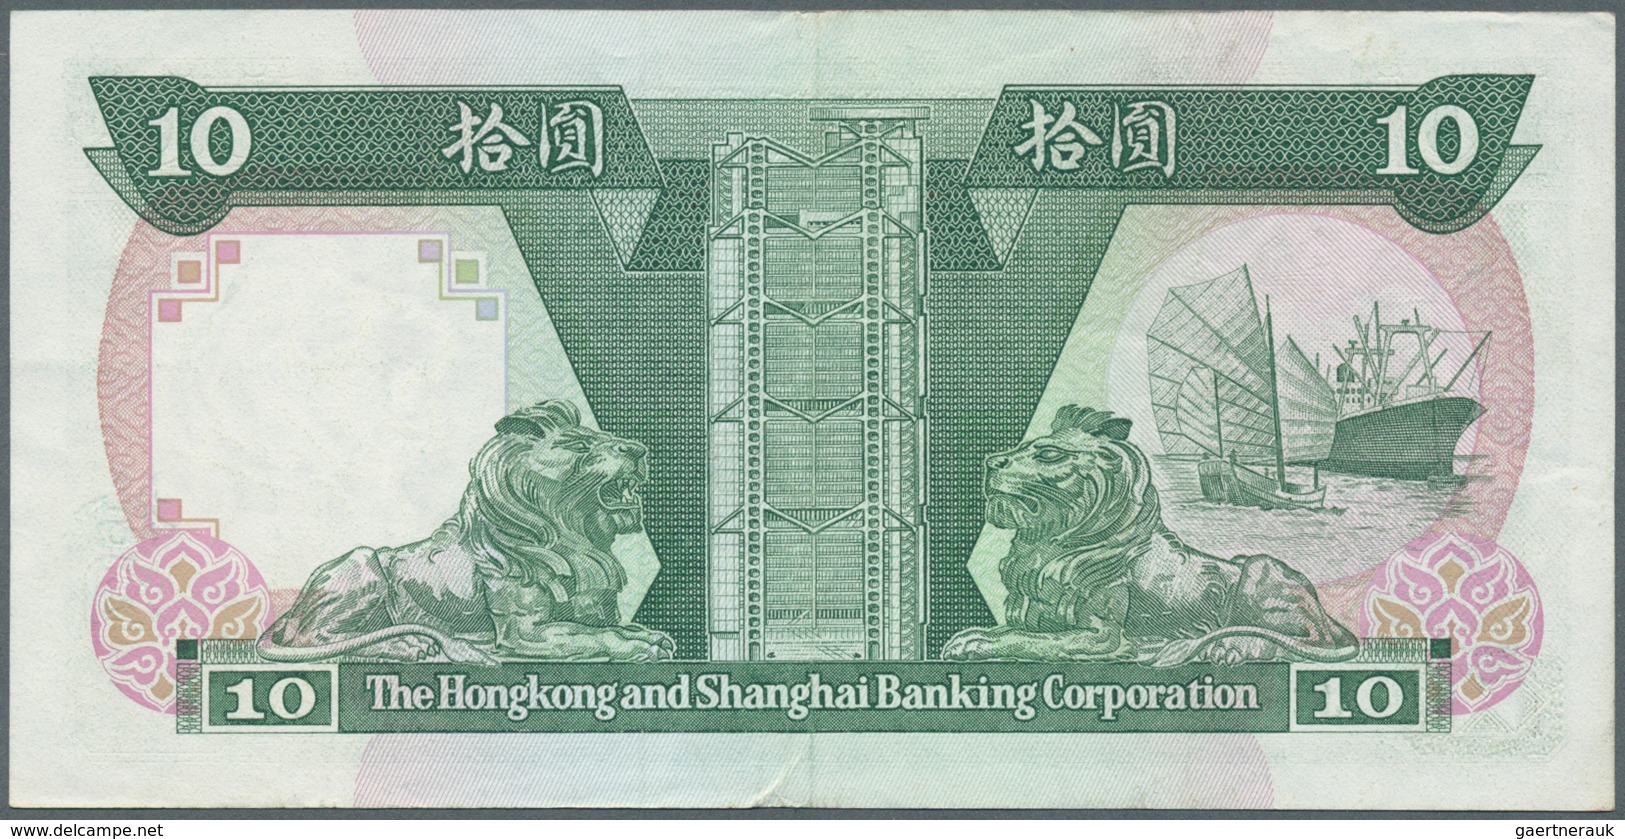 Hong Kong: Set Of 19 Banknotes Containing 10 Dollars The Chartered Bank 1977 P. 74c (UNC), 5 Dollars - Hongkong